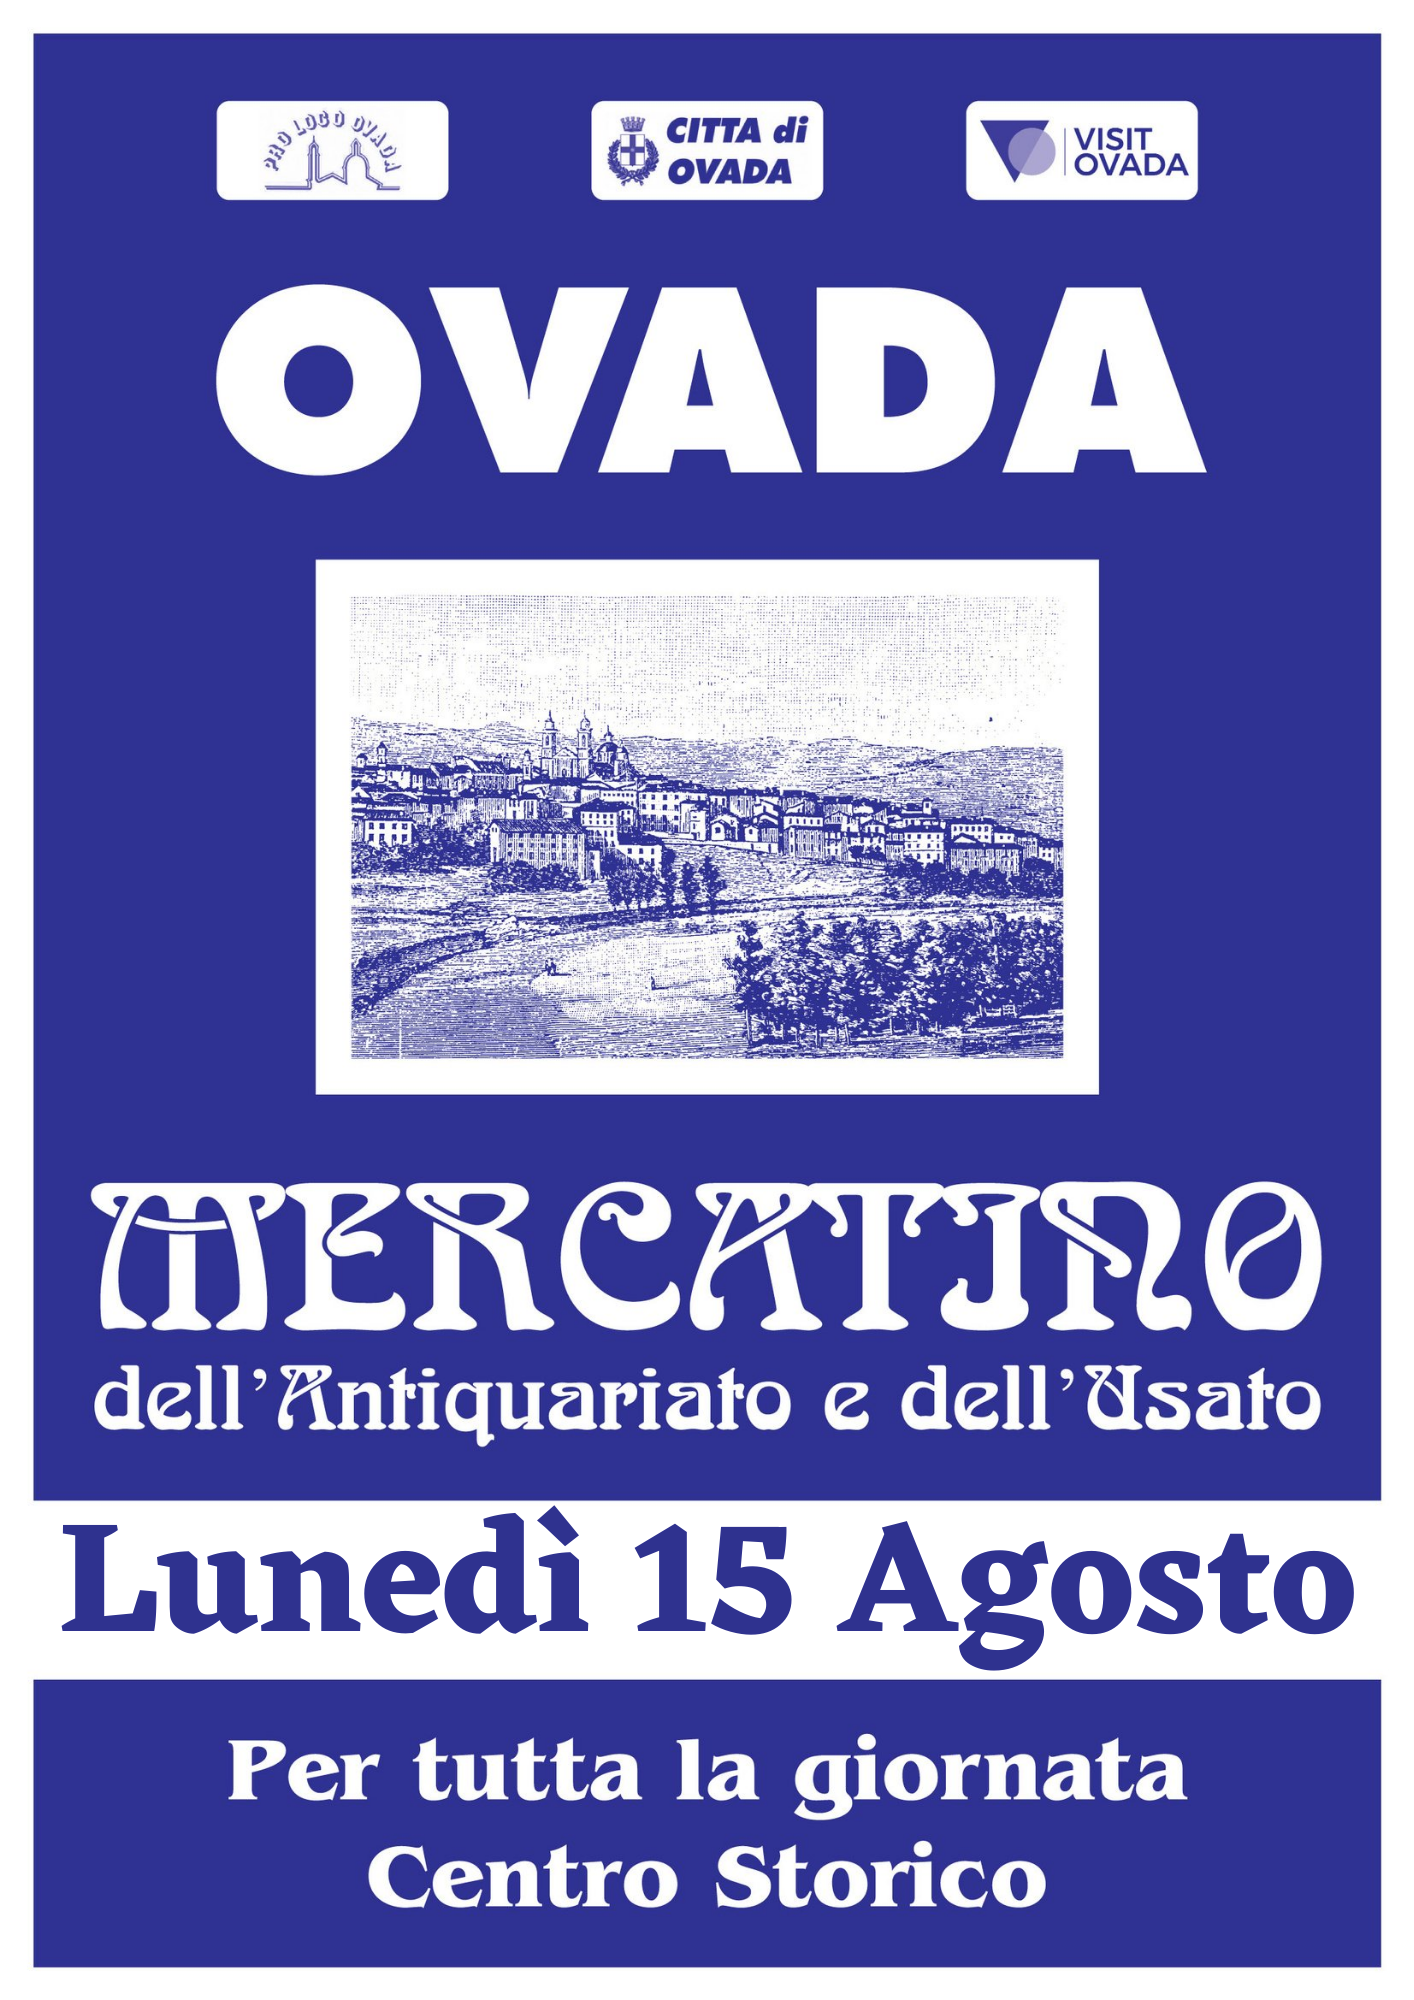 Il 15 agosto a Ovada torna il Mercatino dell’Antiquariato e dell’Usato